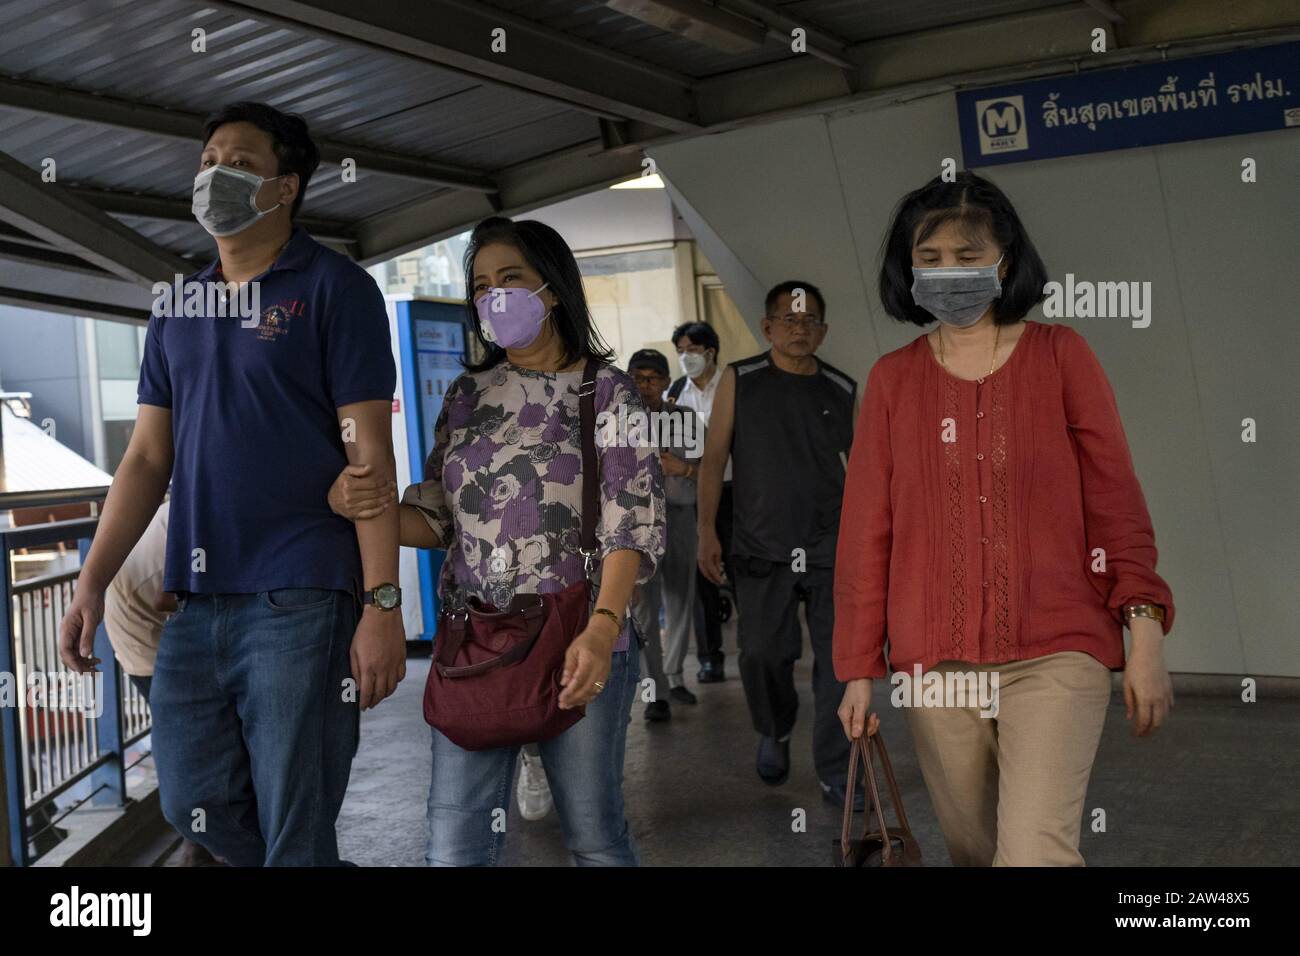 Bangkok, Bangkok, Thaïlande. 6 février 2020. Les membres du public traversent la station de transport en commun de Bangkok Sala Daeng tout en portant des masques de protection pour le visage en raison de la propagation du coronavirus. Crédit: Adryel Talamantes/Zuma Wire/Alay Live News Banque D'Images